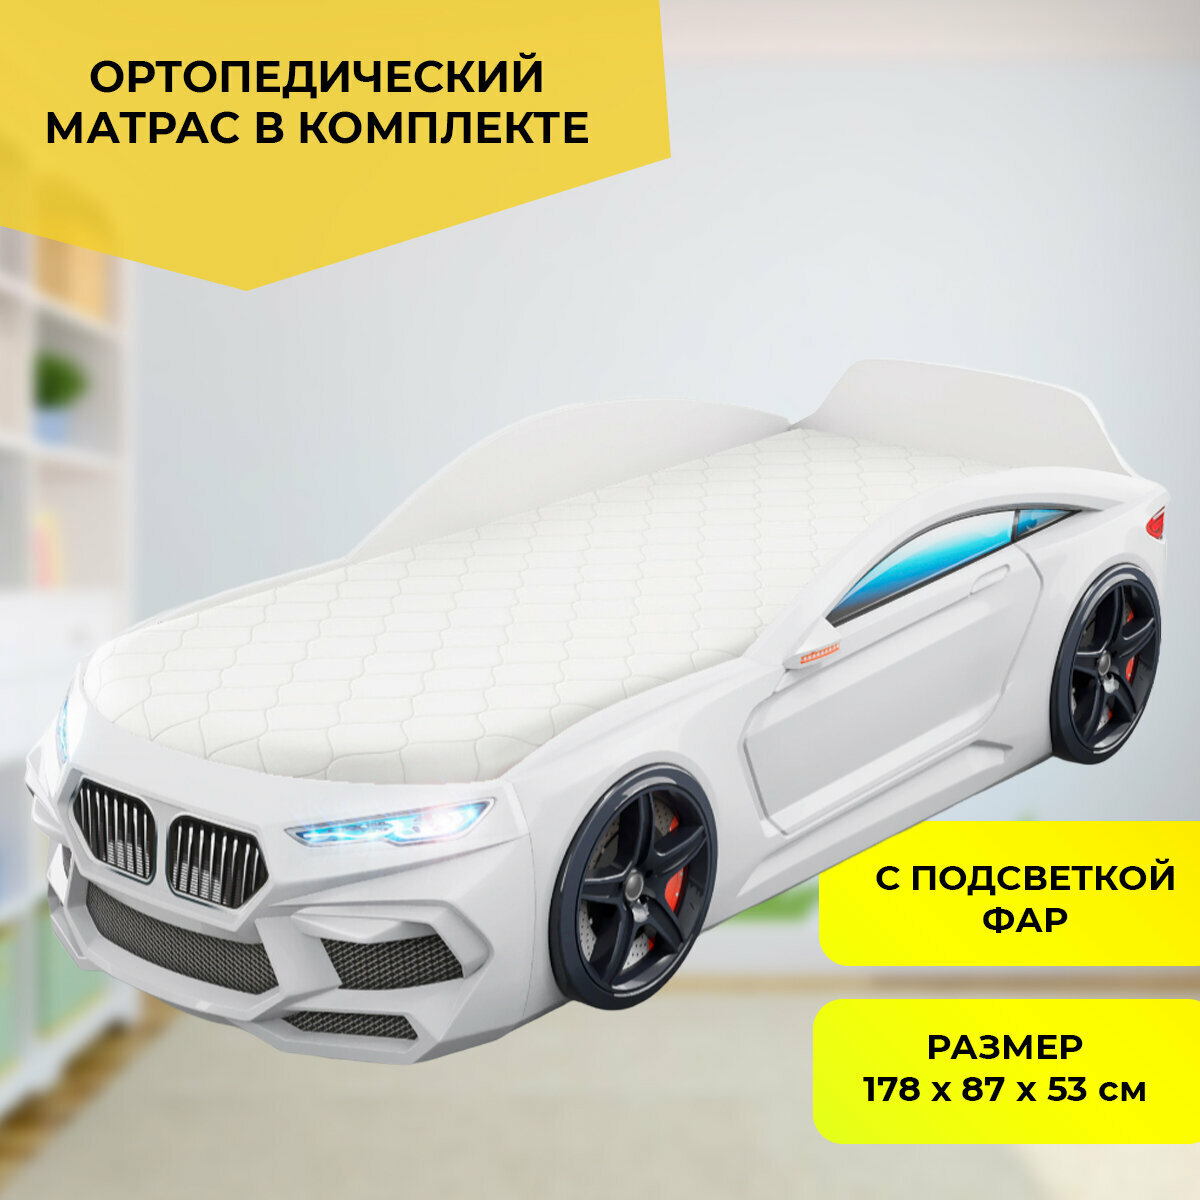 Кровать-машина "Romeo" объемная белая с матрасом и подсветкой фар в комплекте, спальное место 170х70 см